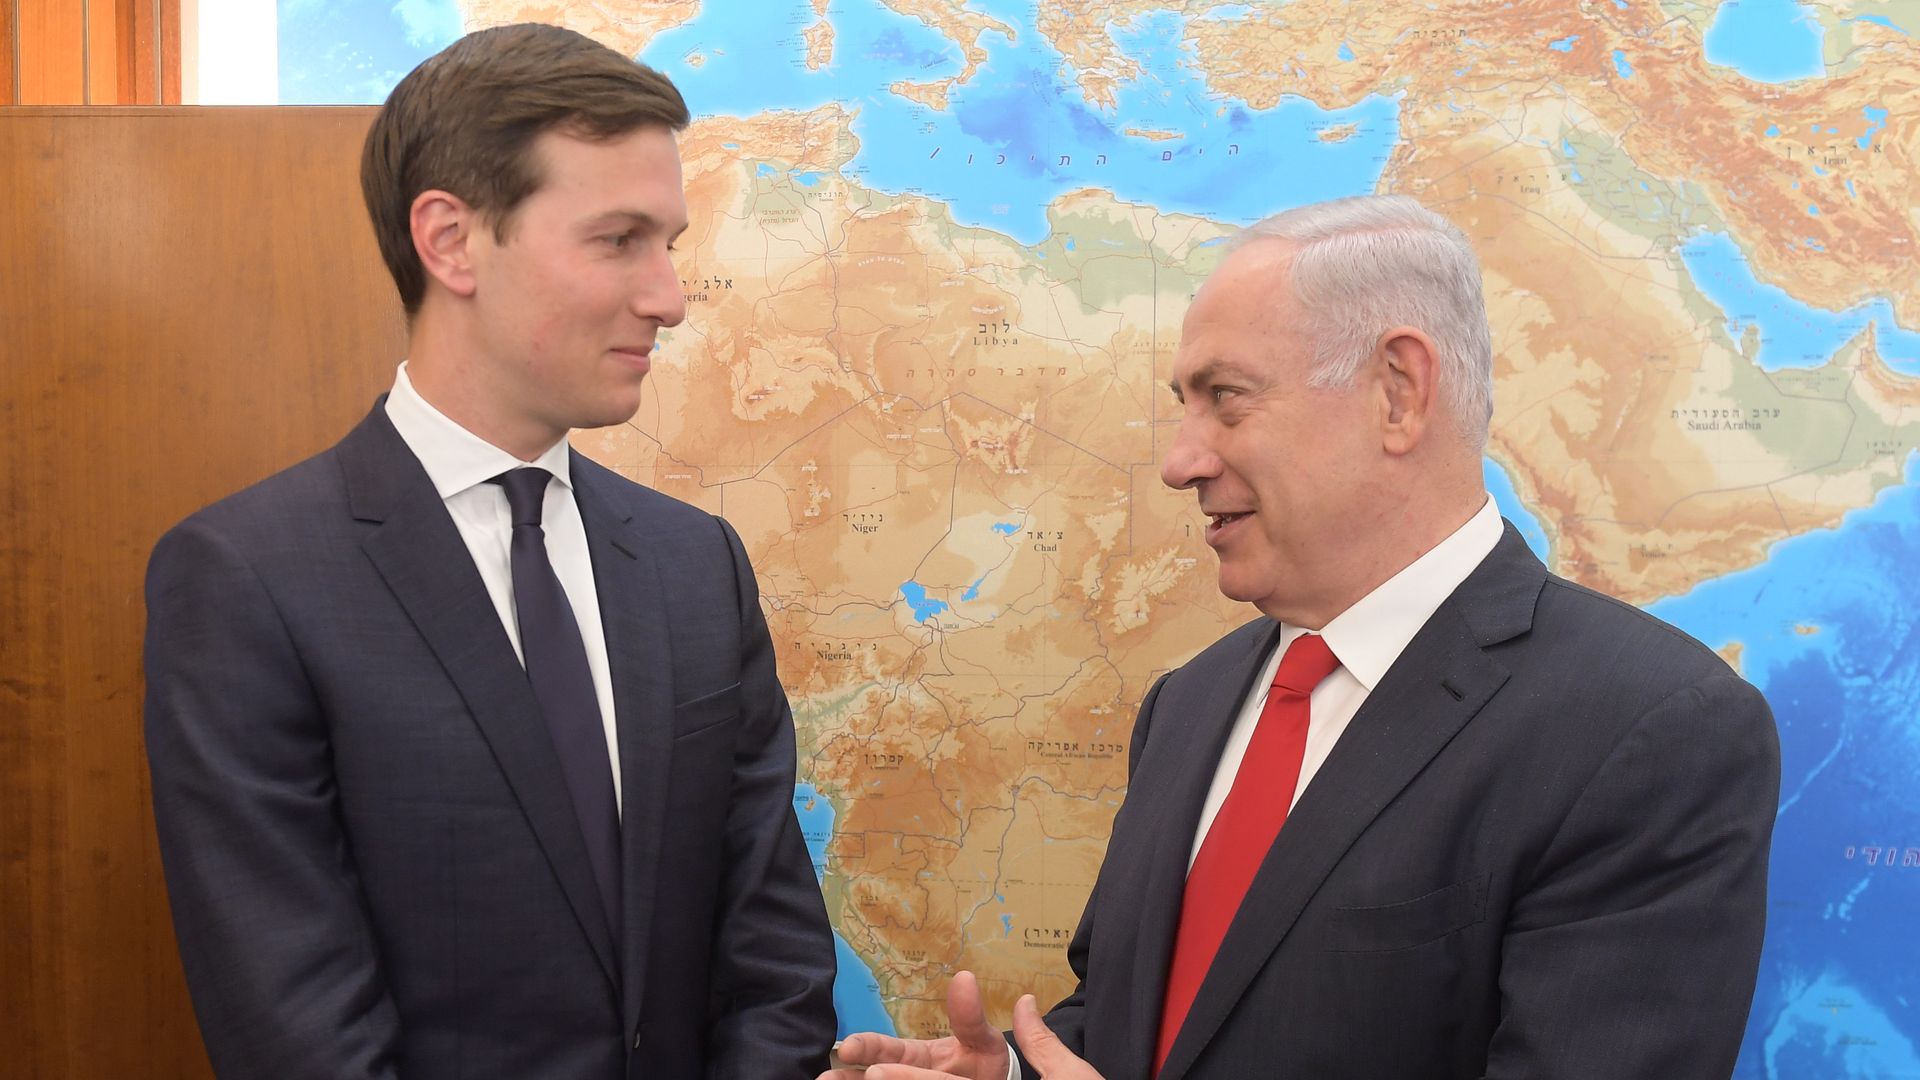 Jared Kushner with Netanyahu